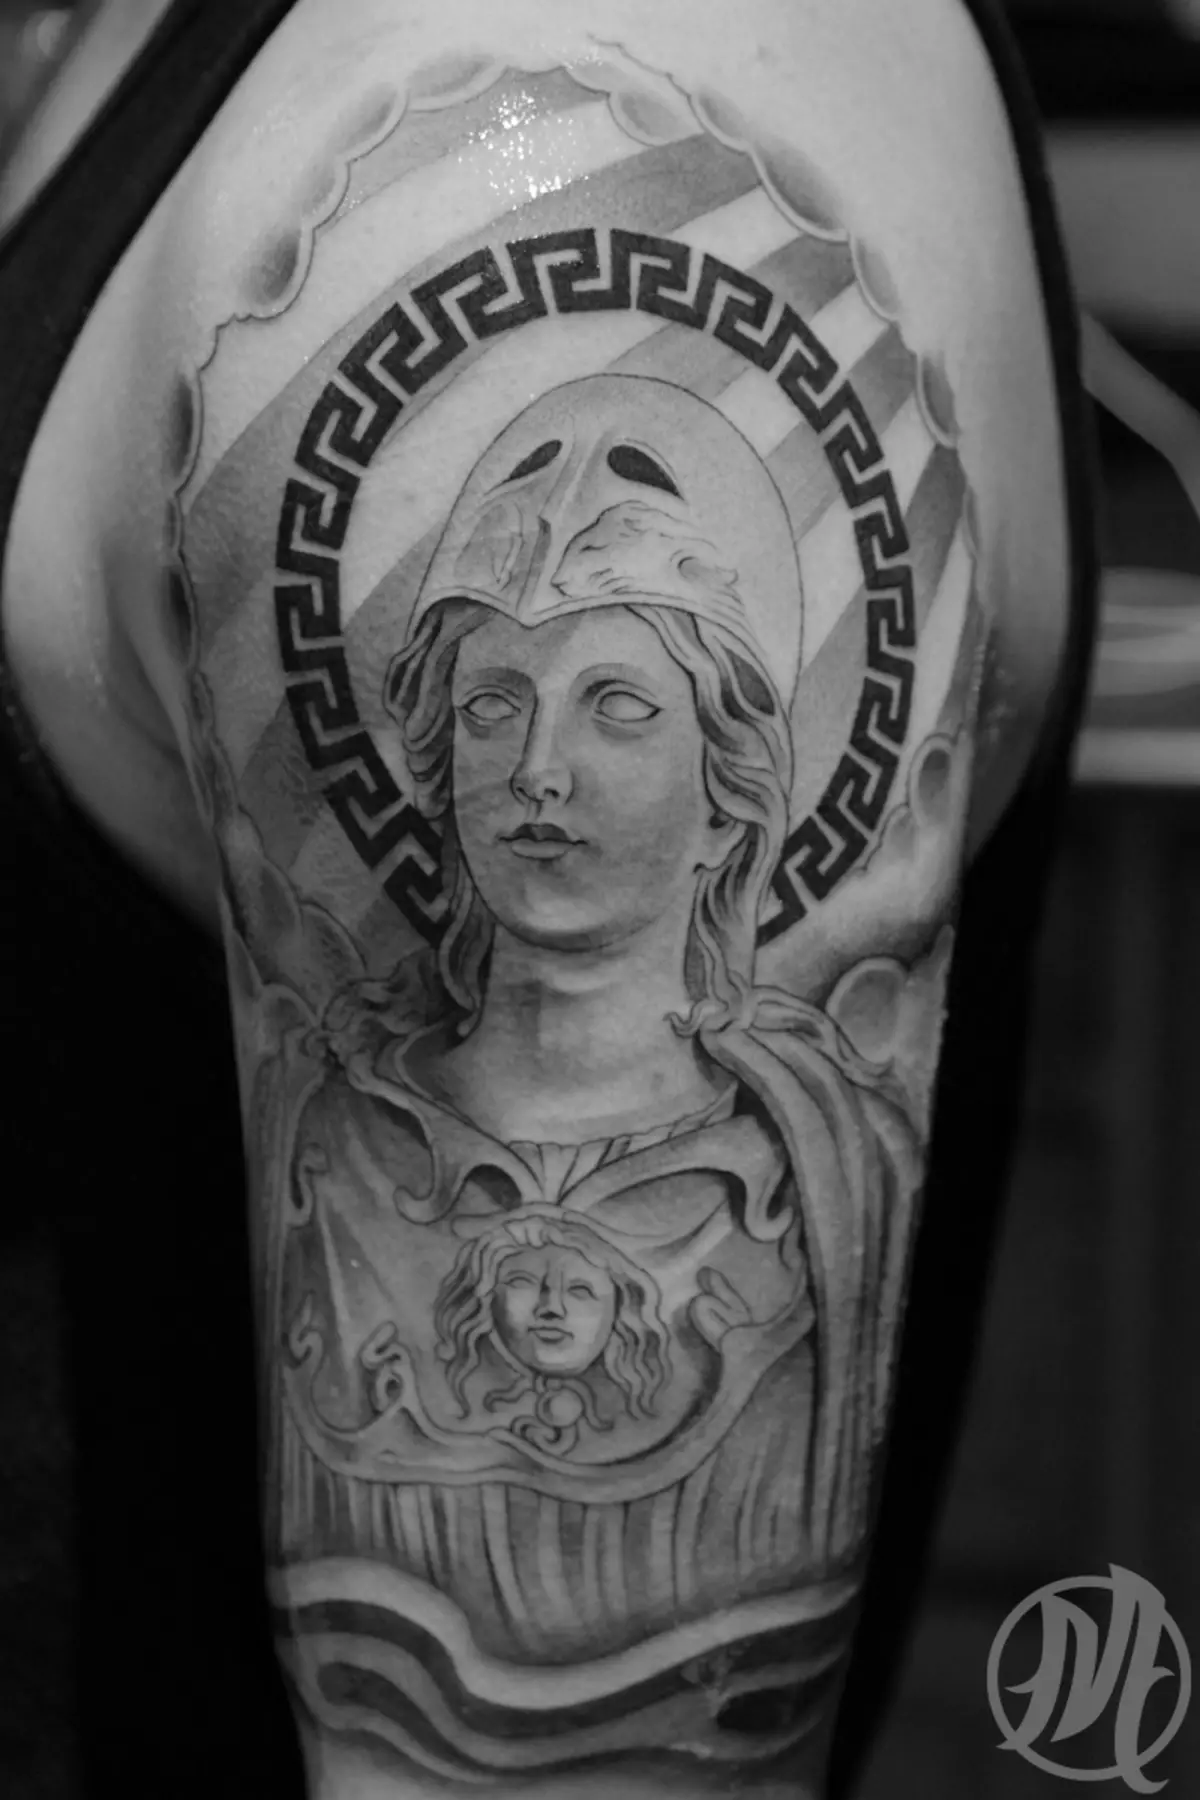 tattoo Rómhánach: Tattoo le Legionnaire de ársa Róimhe, sceitsí agus brí, a Dhia Mars, comhartha ar an Léigiún agus clogad, tattoo eile 299_22